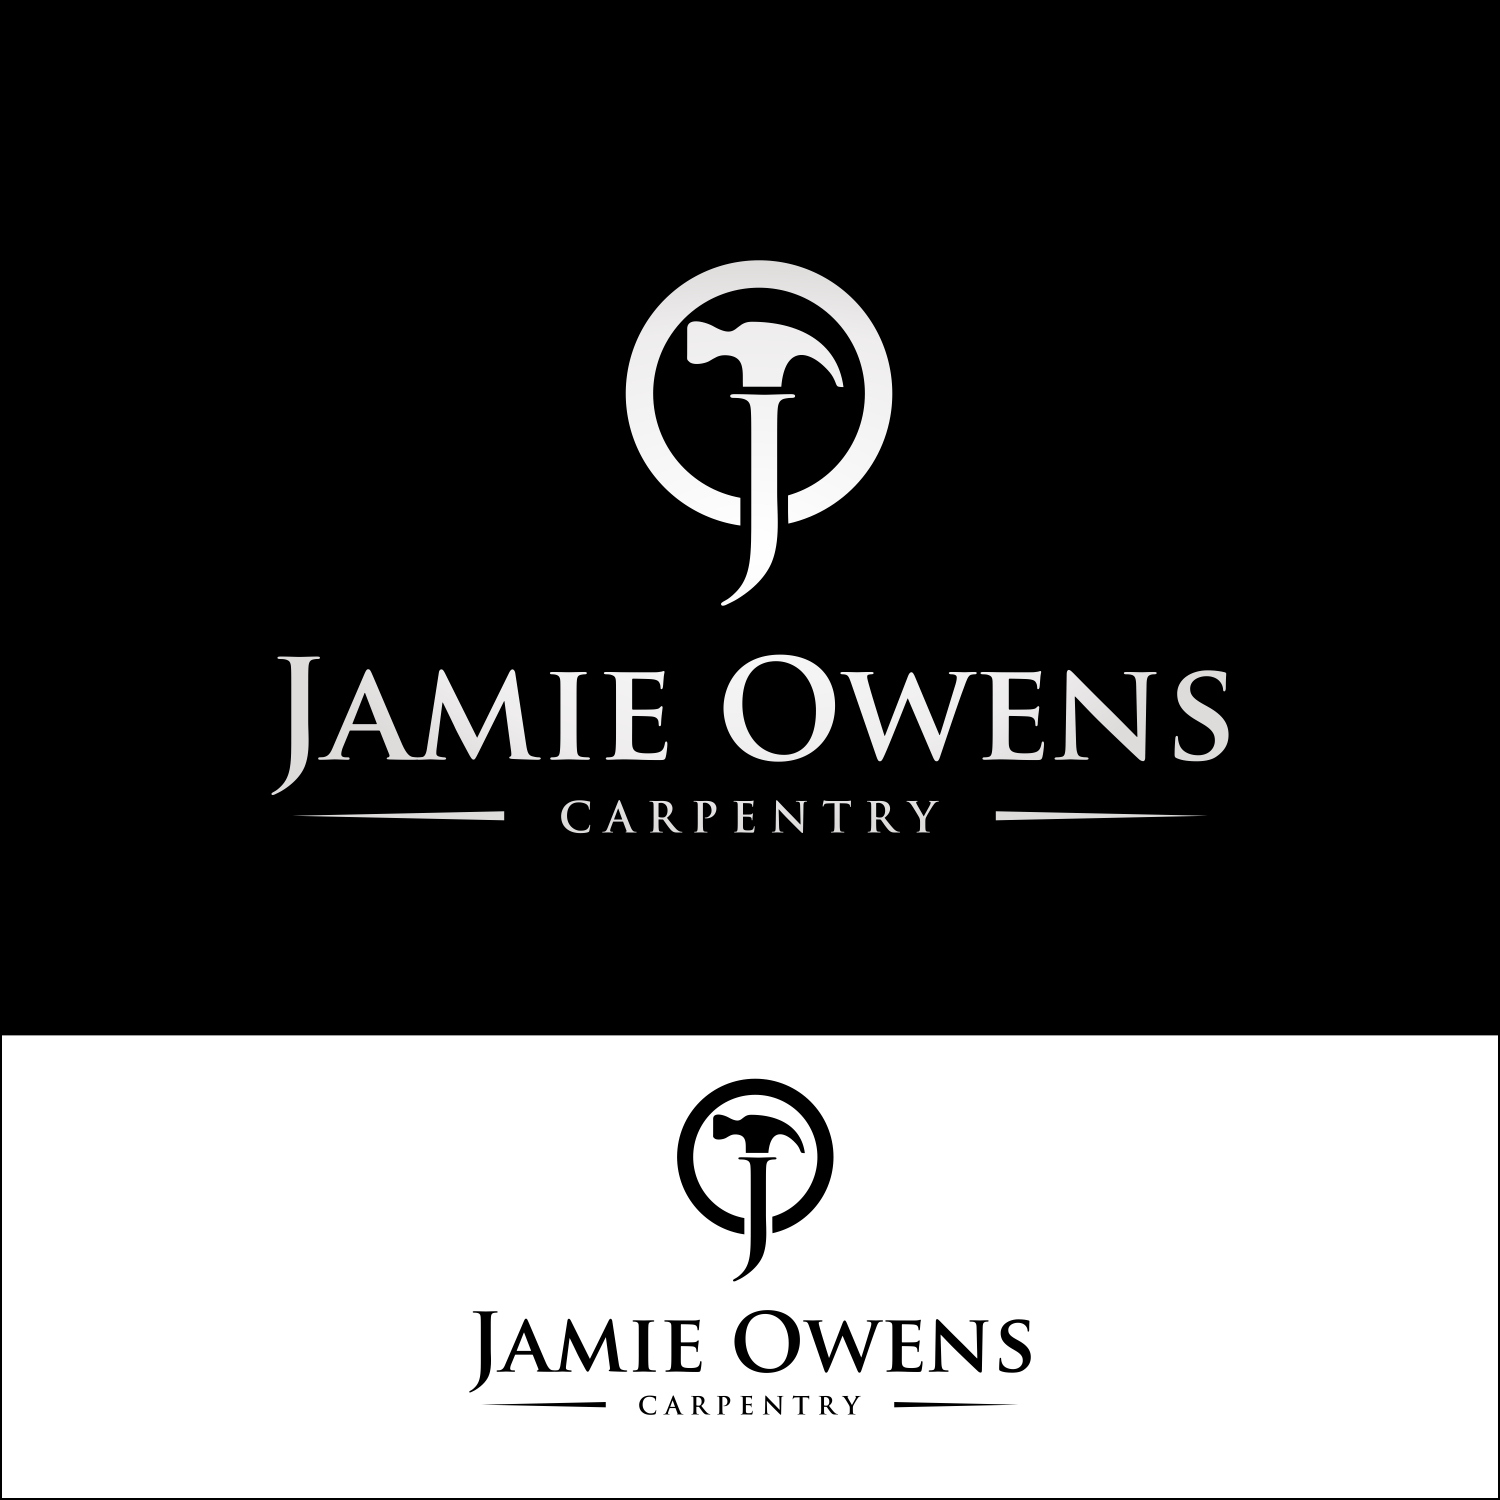 Carpentry Company Logo - Elegant, Playful, Carpentry Logo Design for Jamie Owens Carpentry